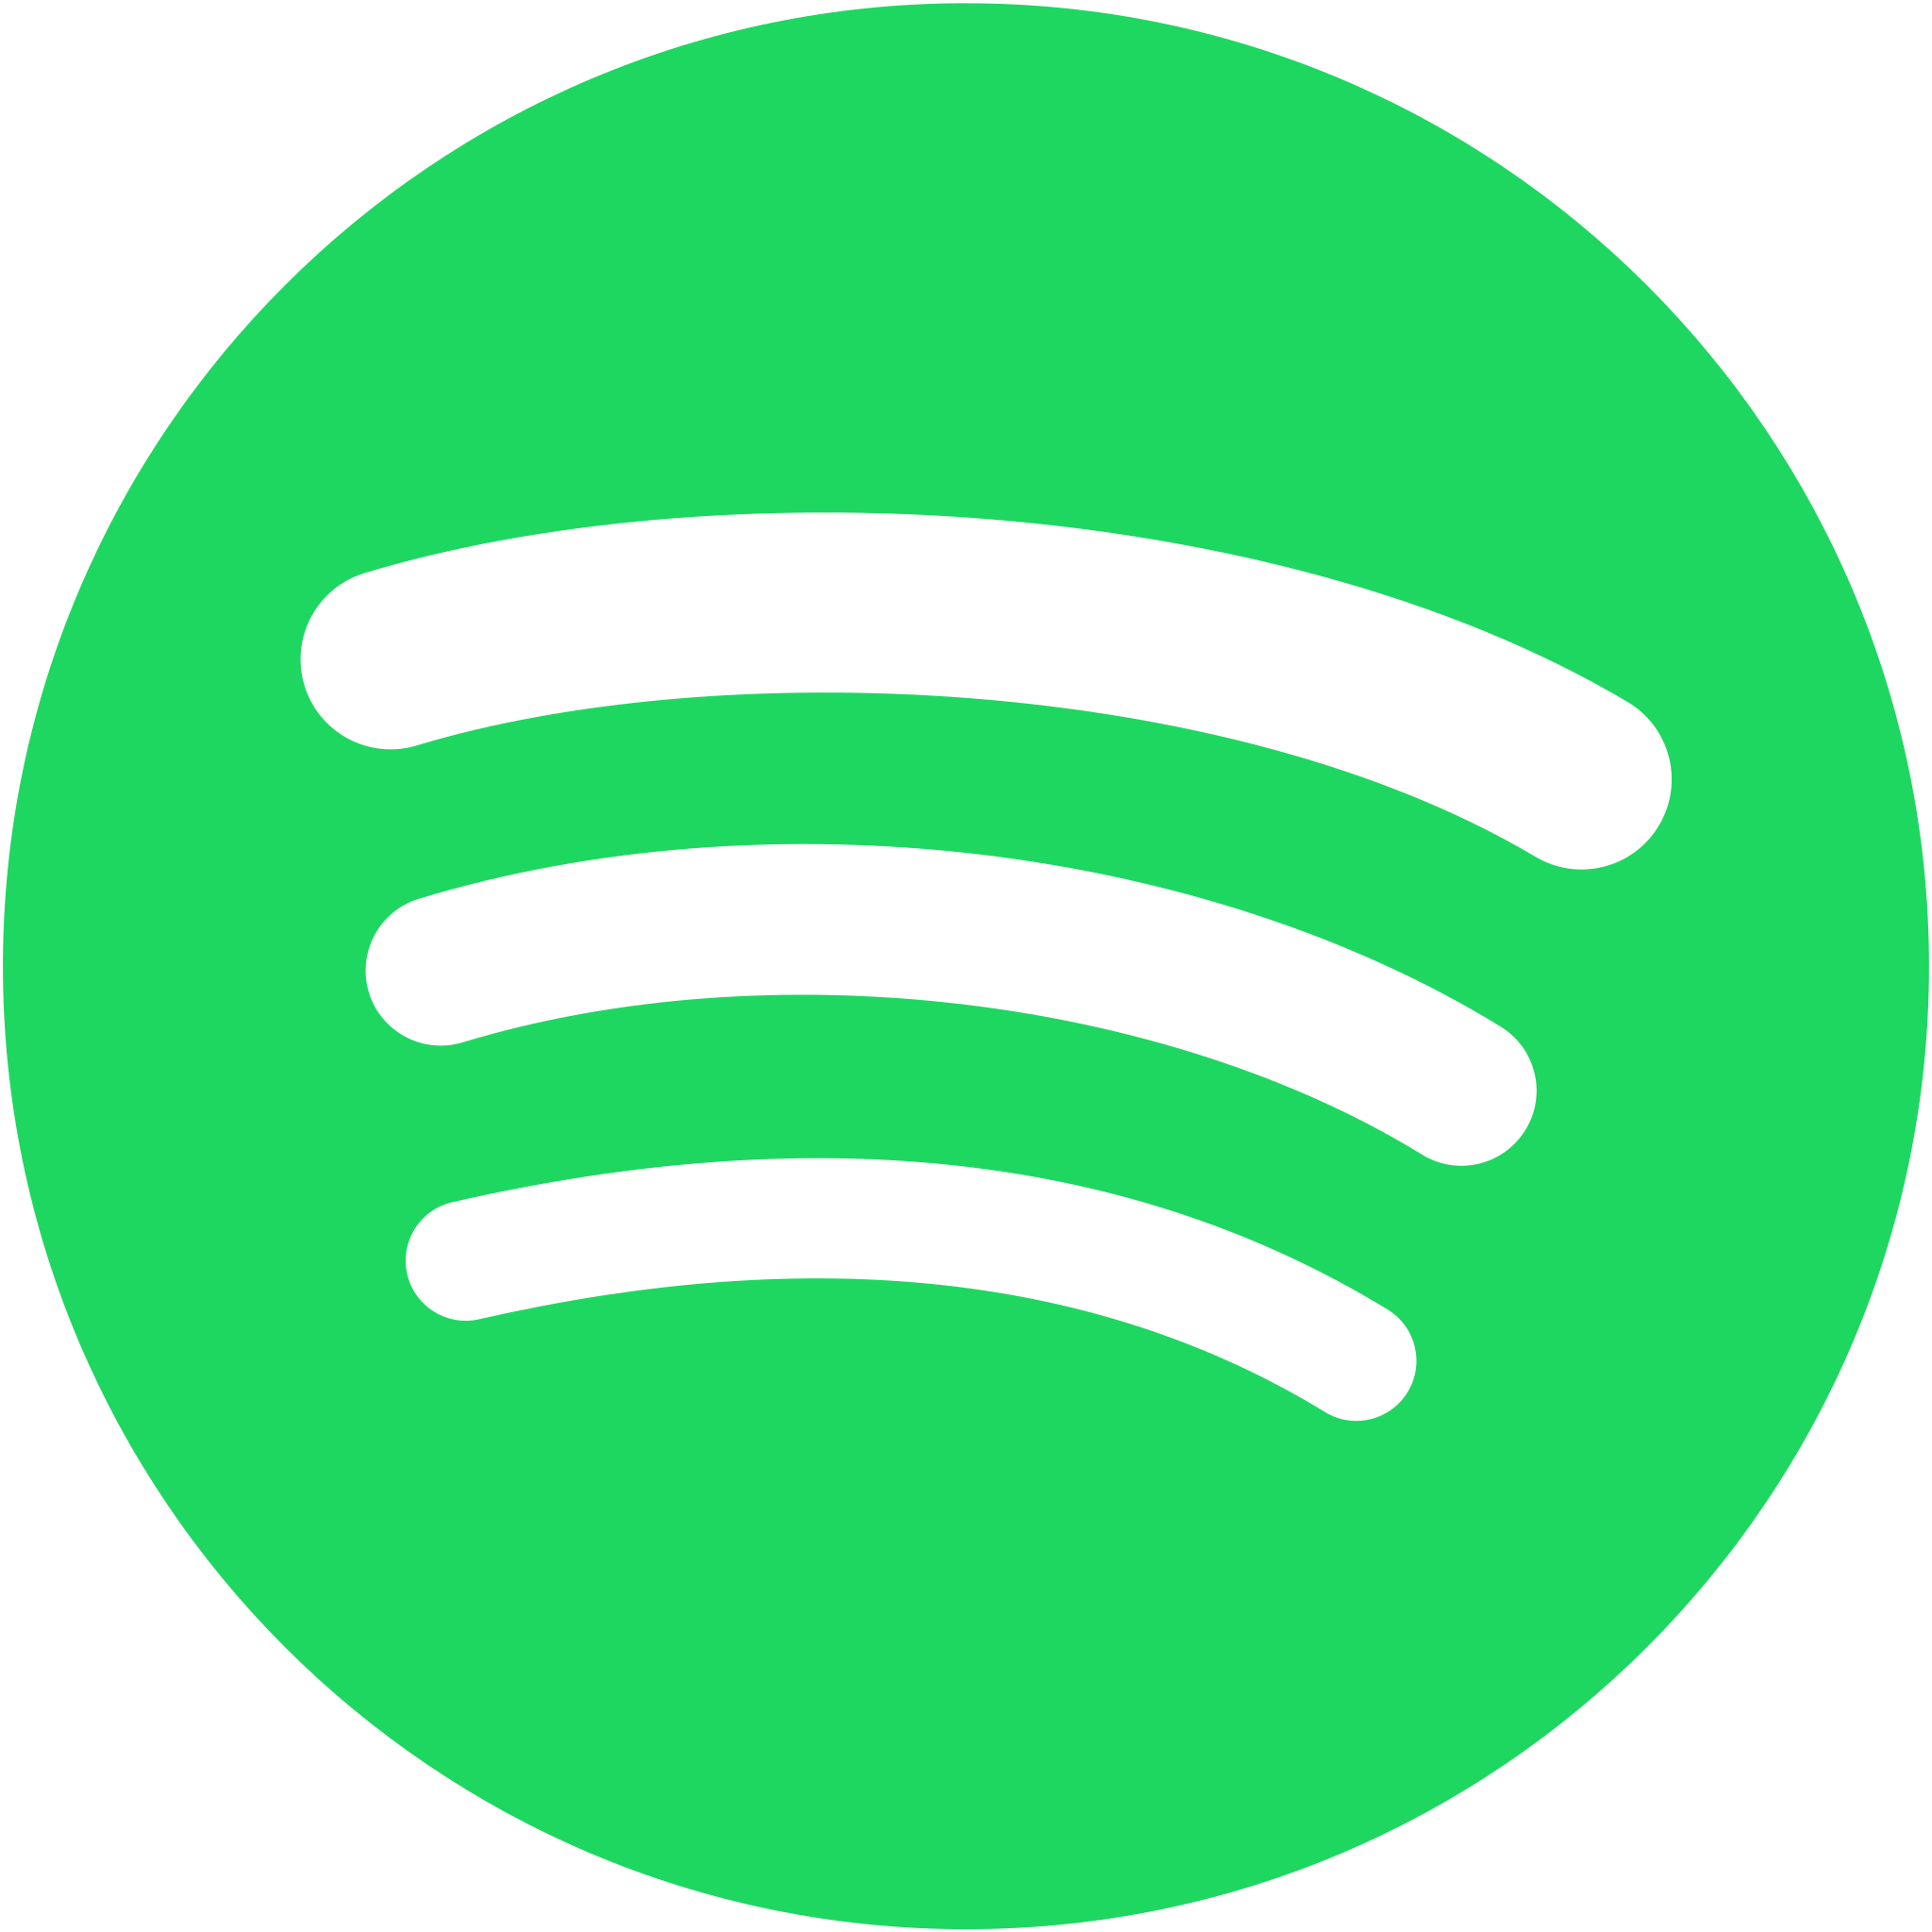 Spotify_logo_without_text.svg.webp